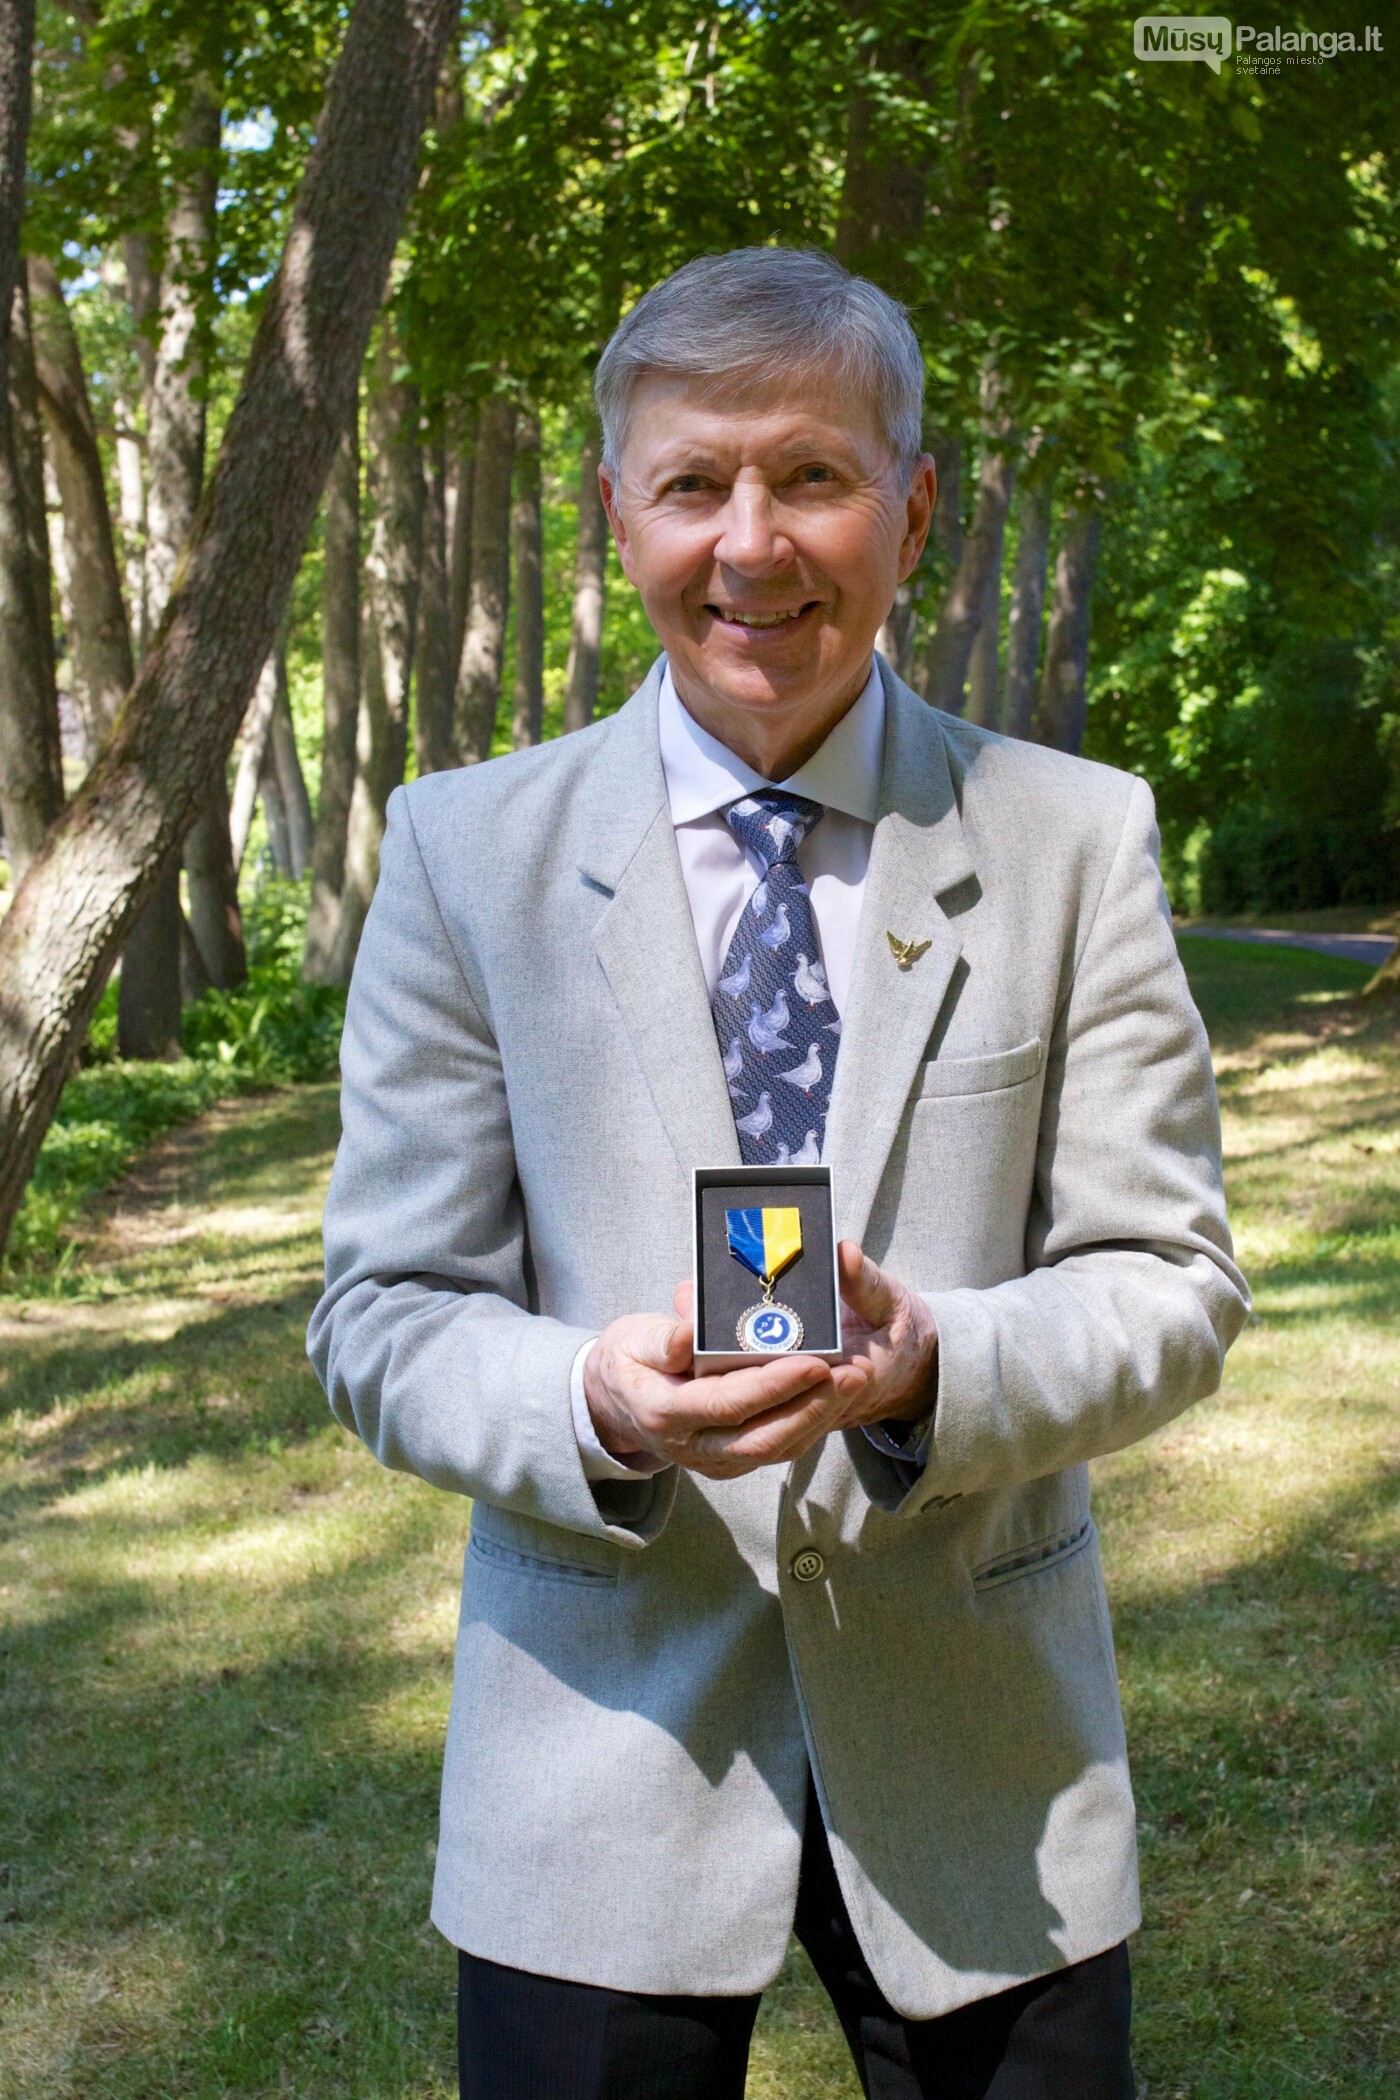 Įteiktas Švedijos balandžių augintojų asociacijos garbės nario medalis už balandininkystės puoselėjimą